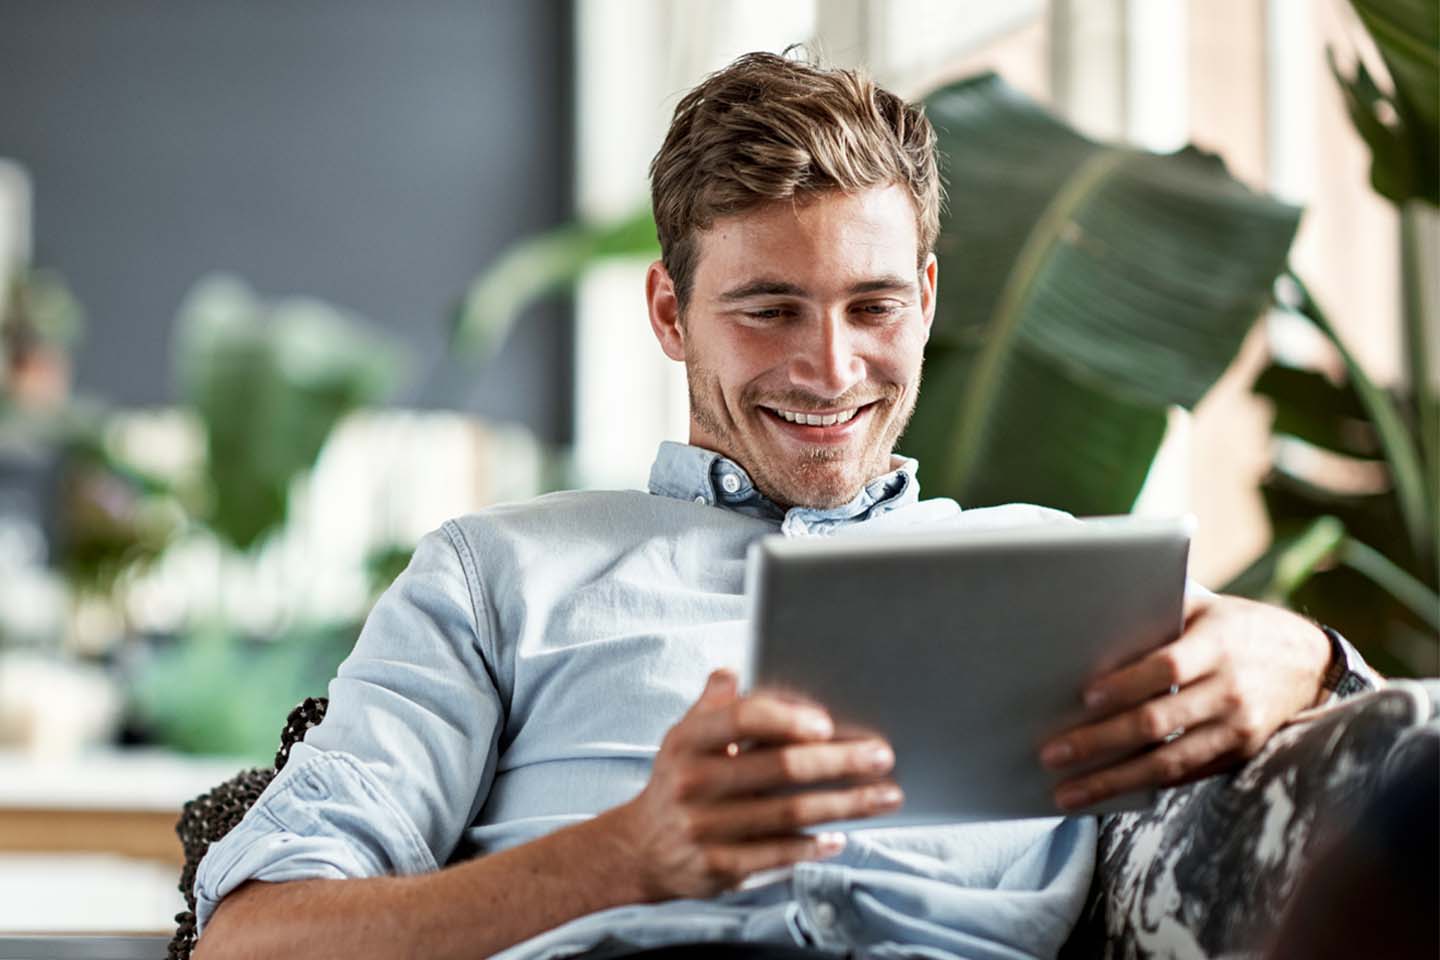 Ein junger Mann mit Dreitagebart sitzt lässig auf einem Sofa. Er ist umgeben von hohen Grünpflanzen und schaut lächelnd auf seinen Tablet-Computer. 